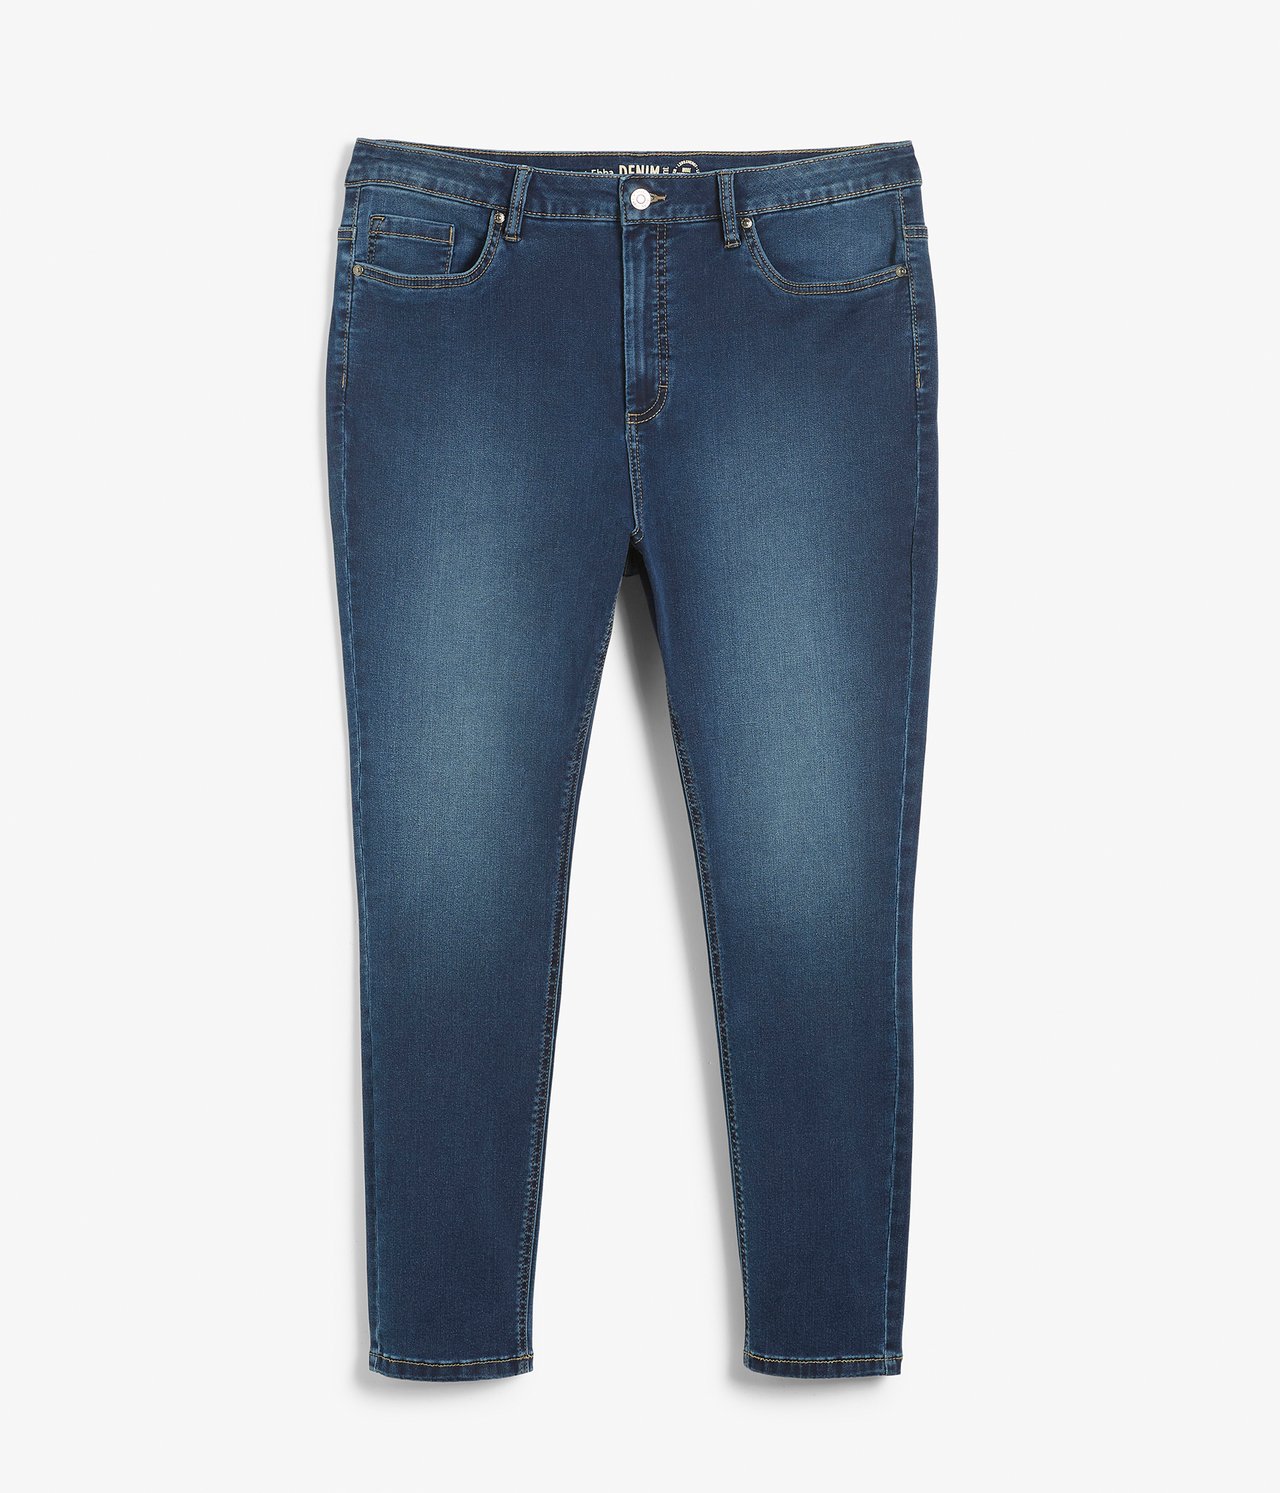 Ebba slim jeans short leg Mörk denim - null - 5